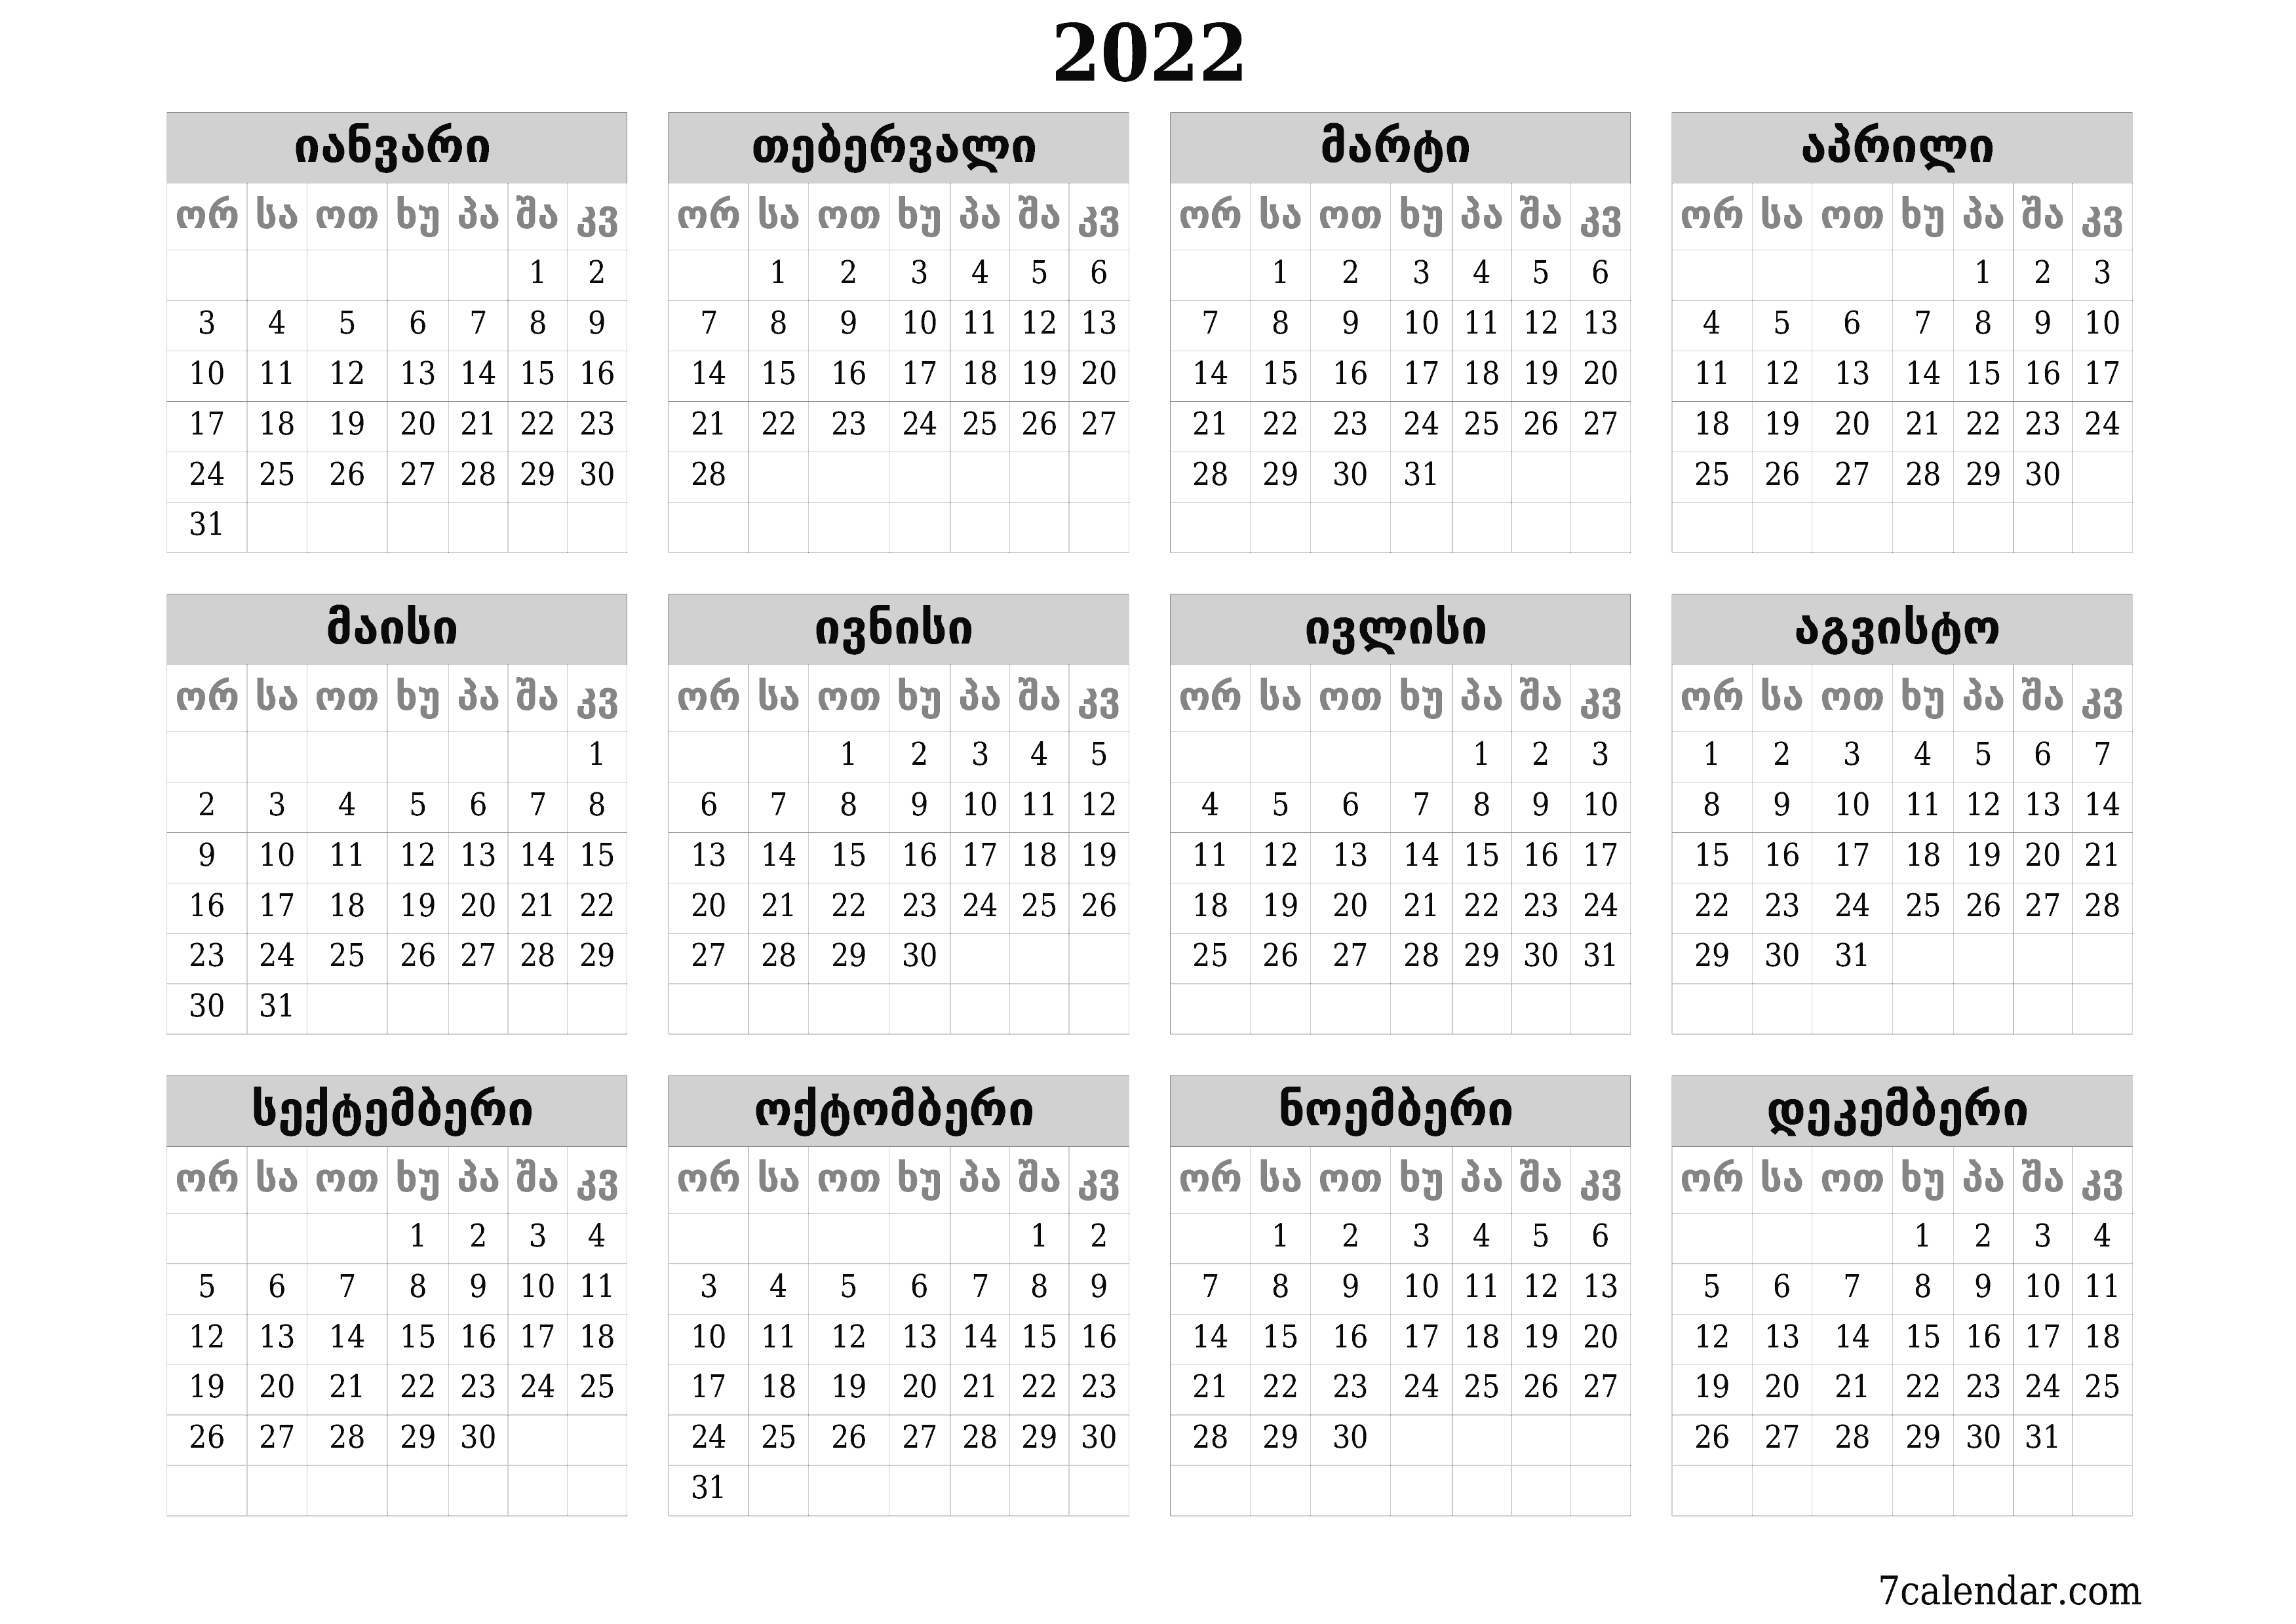 დასაბეჭდი კედლის კალენდრის შაბლონი უფასო ჰორიზონტალური ყოველწლიურად კალენდარი დეკემბერი (დეკ) 2022